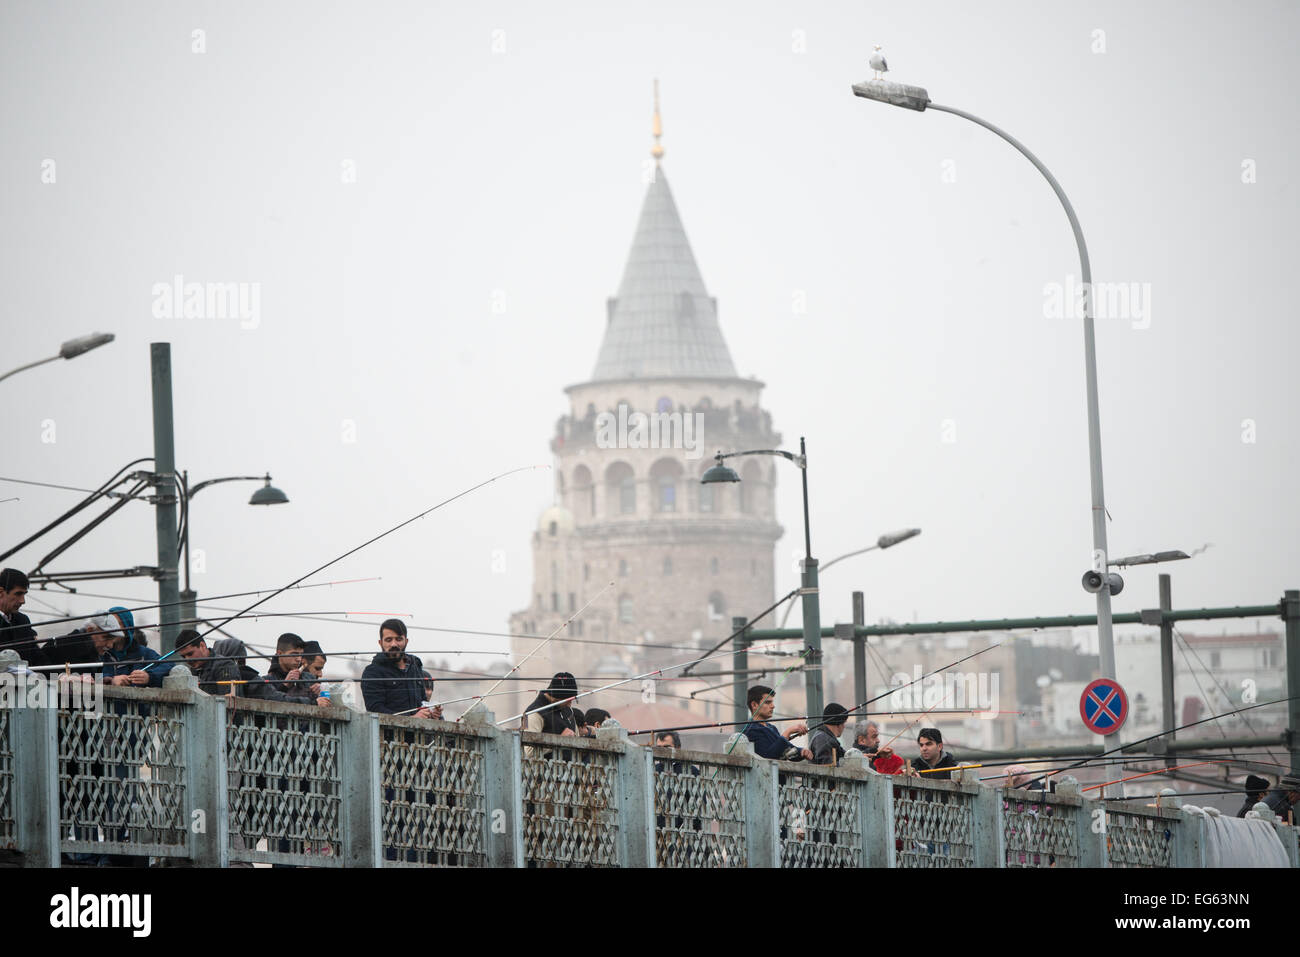 ISTANBUL, Türkei – ISTANBUL, Türkei – Fischer säumen die Galata-Brücke mit dem Galata-Turm im Hintergrund. Eminonu ist eine historische Gegend mit einer reichen osmanischen Vergangenheit und das Herz des alten Istanbul, wo Händler und Touristen sich in einem farbenfrohen Spektakel des kulturellen Austauschs vereinen. Stockfoto